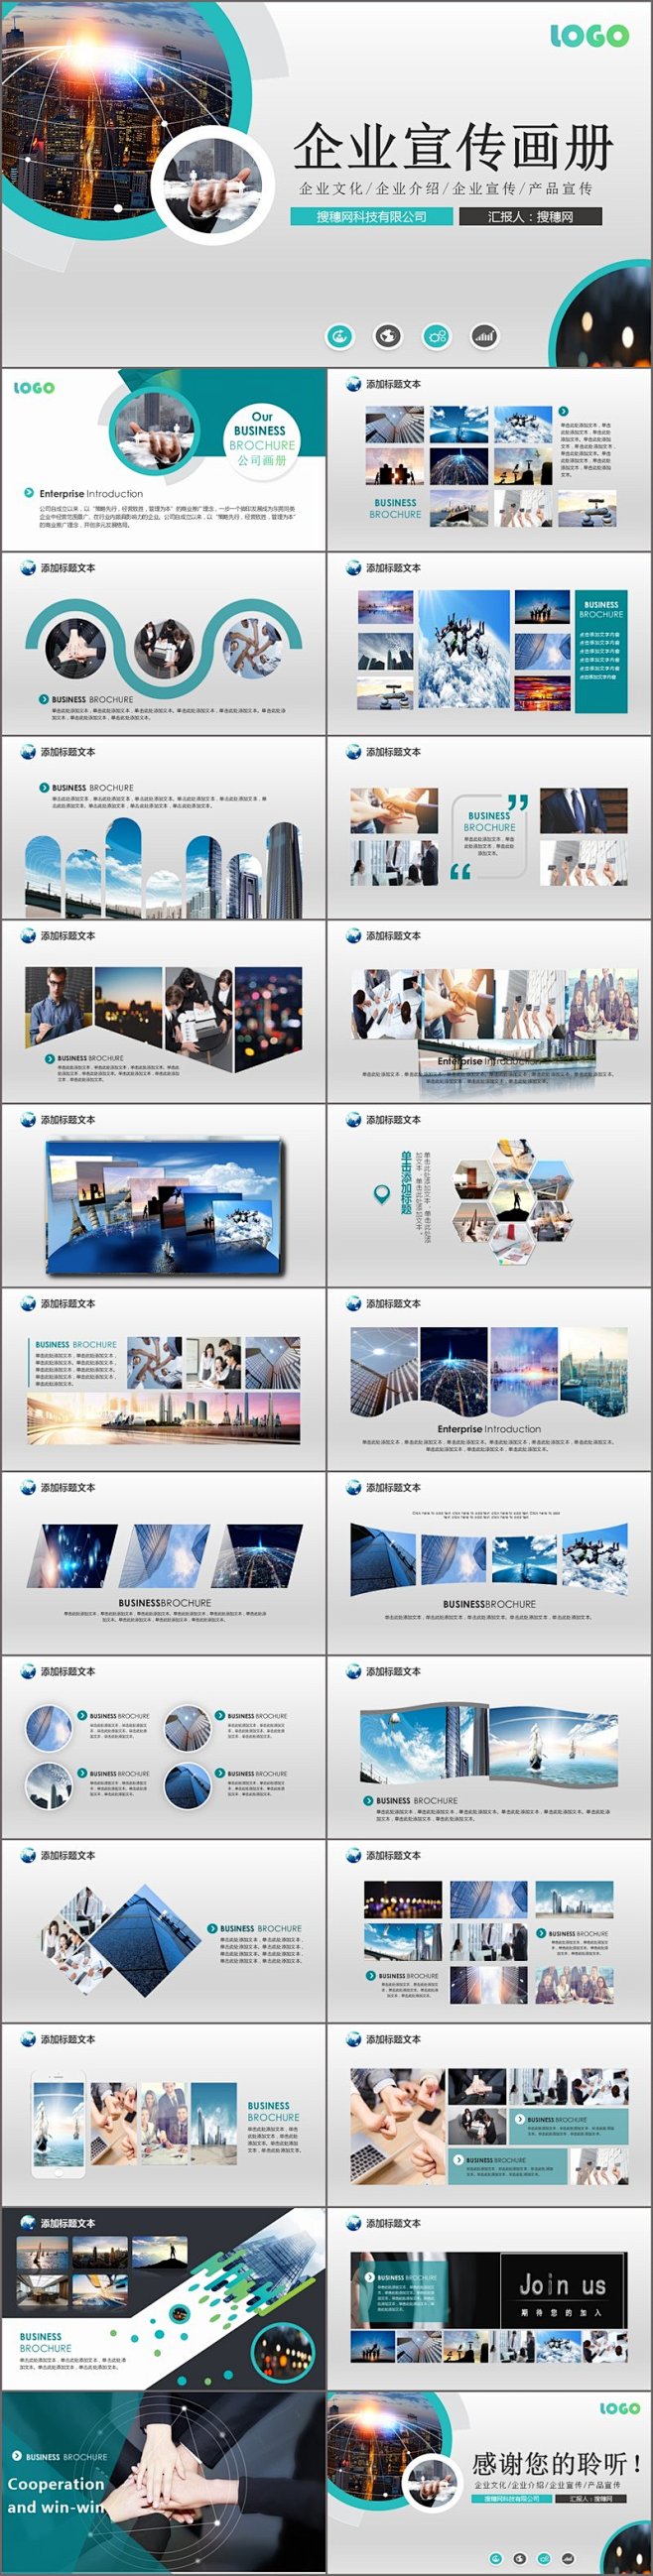 正规企业介绍宣传文化产品画册PPT模板